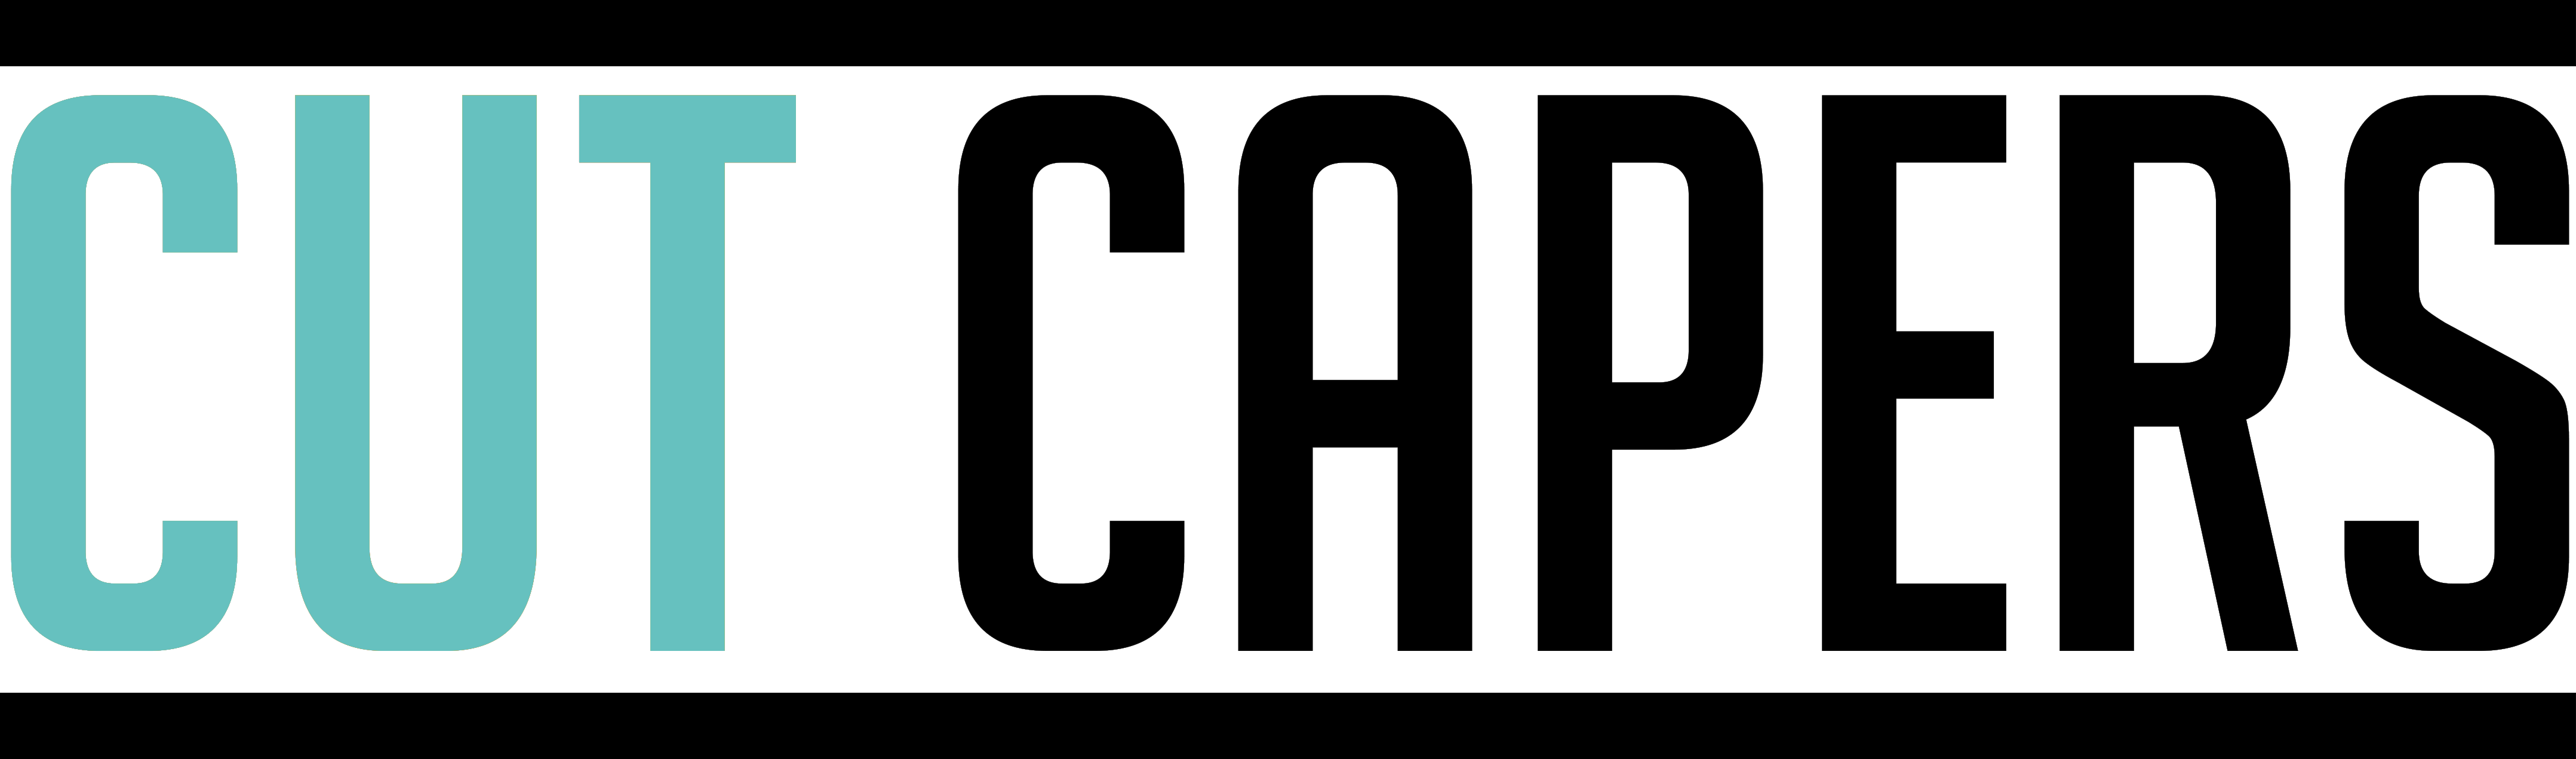 d302f030_Cut-Capers-Logo-2021-blue-and-black-transparent Programmation